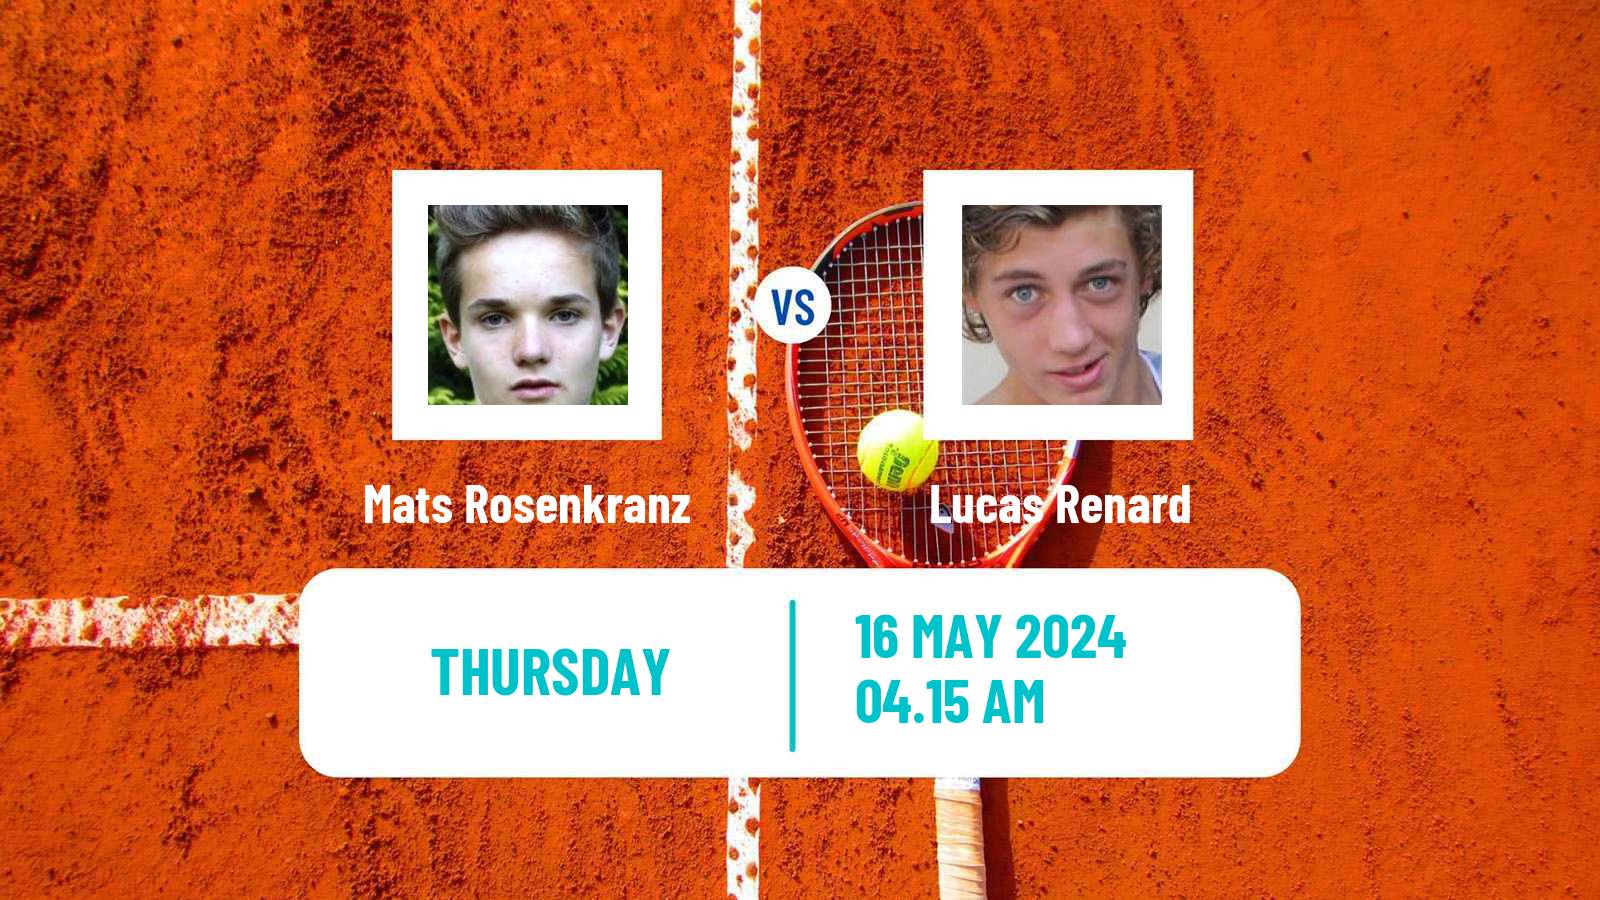 Tennis ITF M15 Kalmar Men Mats Rosenkranz - Lucas Renard